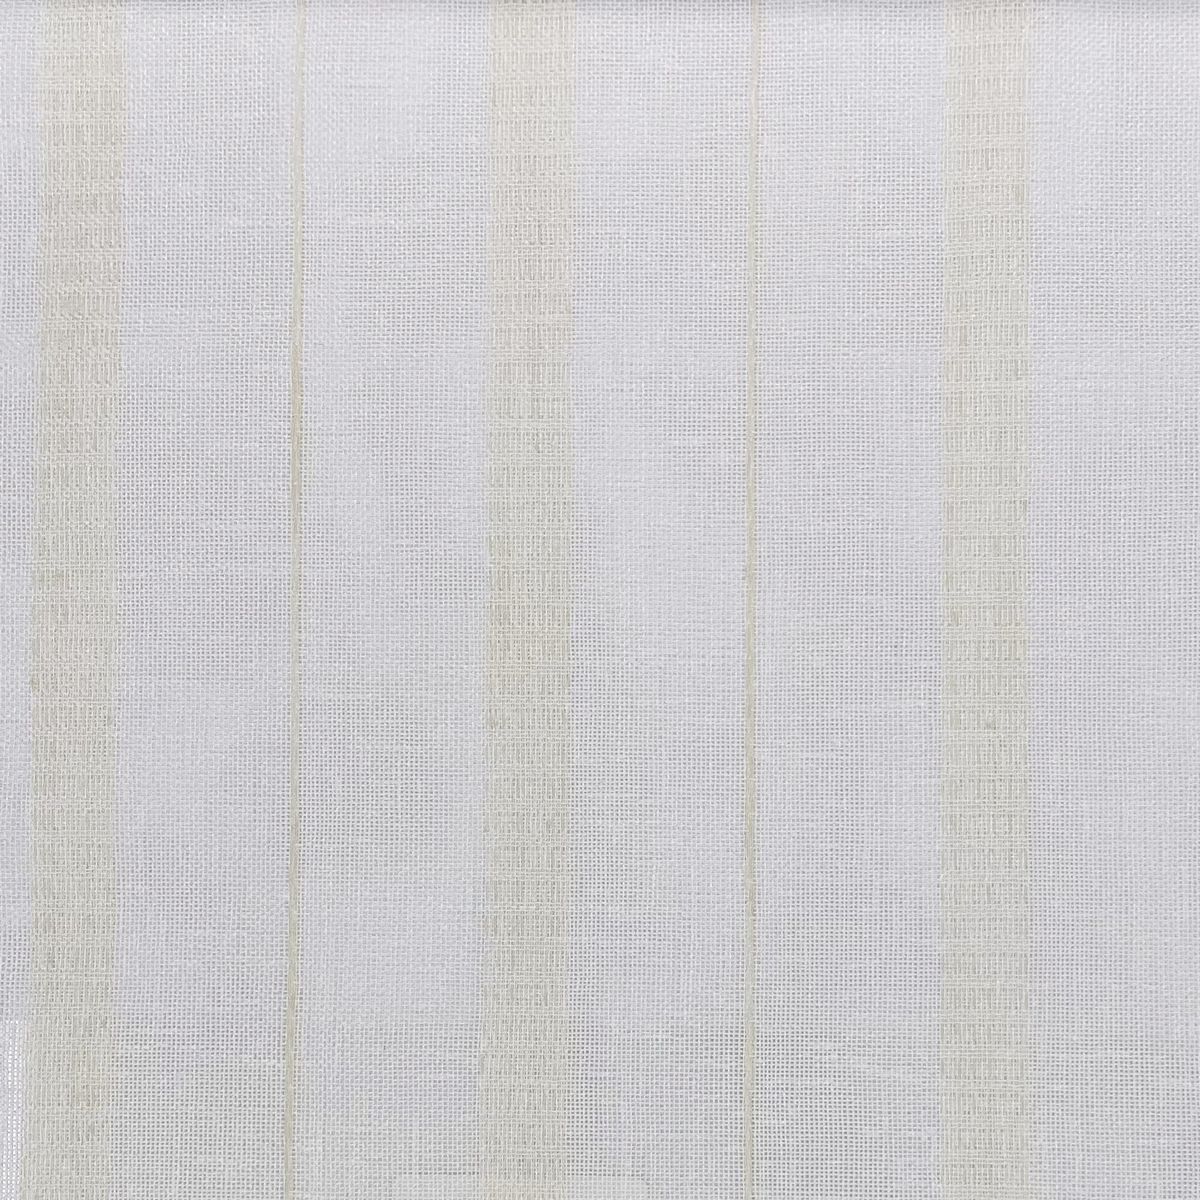 Rhodes Ivory Fabric by Chatham Glyn